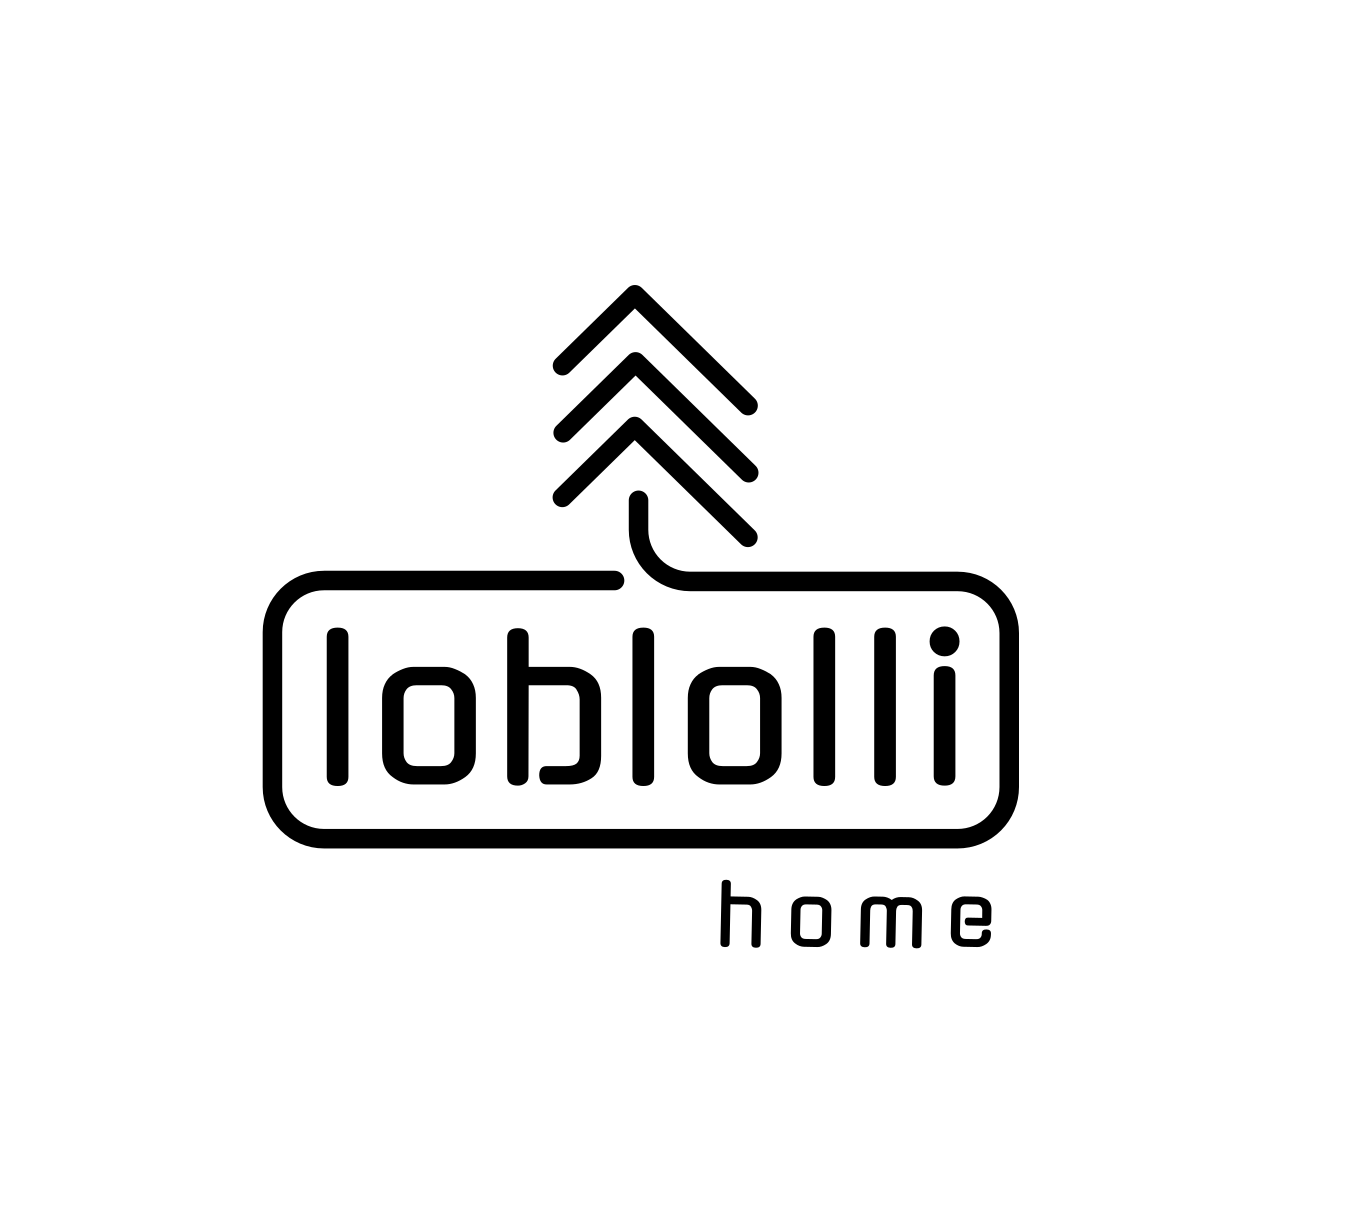 Loblolli Home LLC Logo